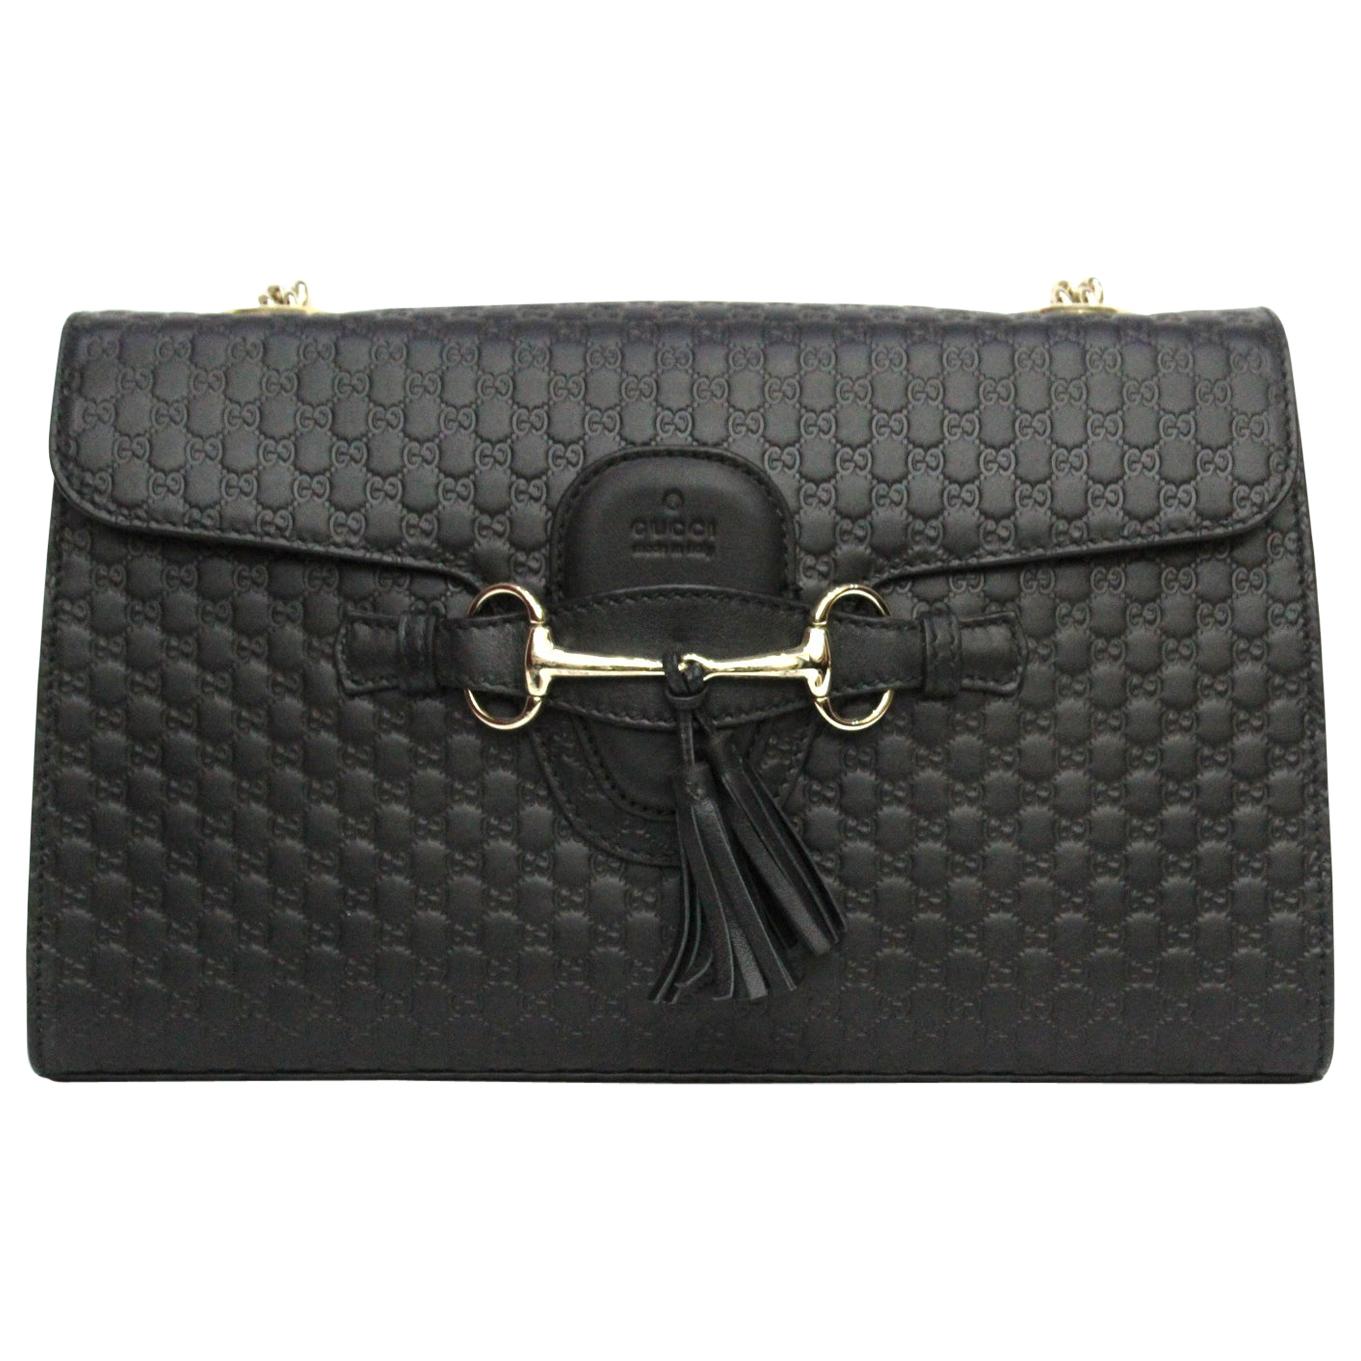 Gucci Black Guccissima Leather Emily Bag